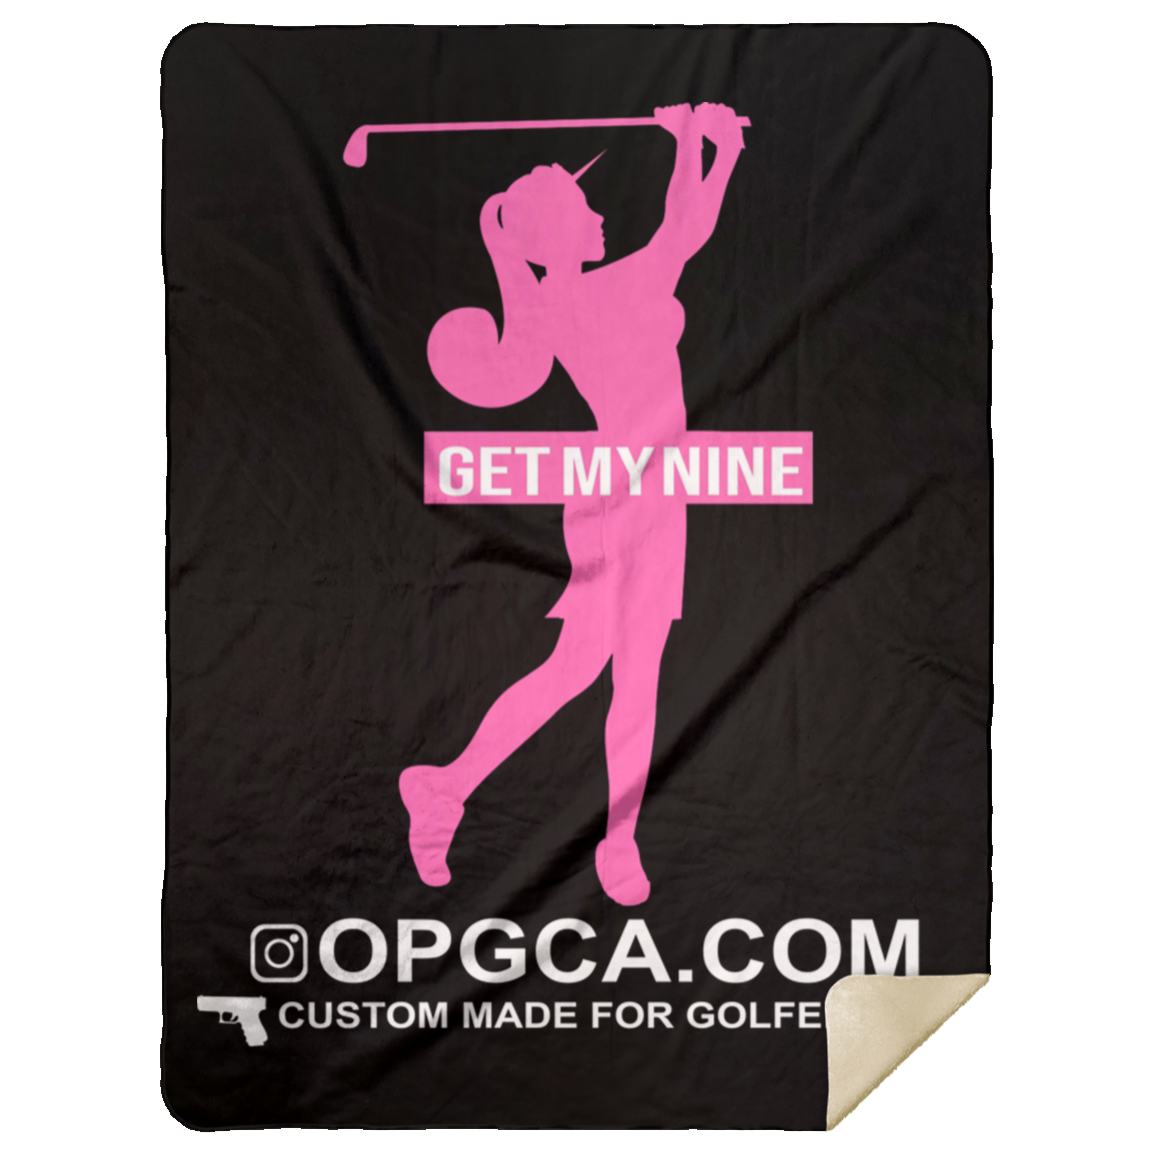 OPG Custom Design #16. Get My Nine. Female Version. Premium Mink Sherpa Blanket 60x80